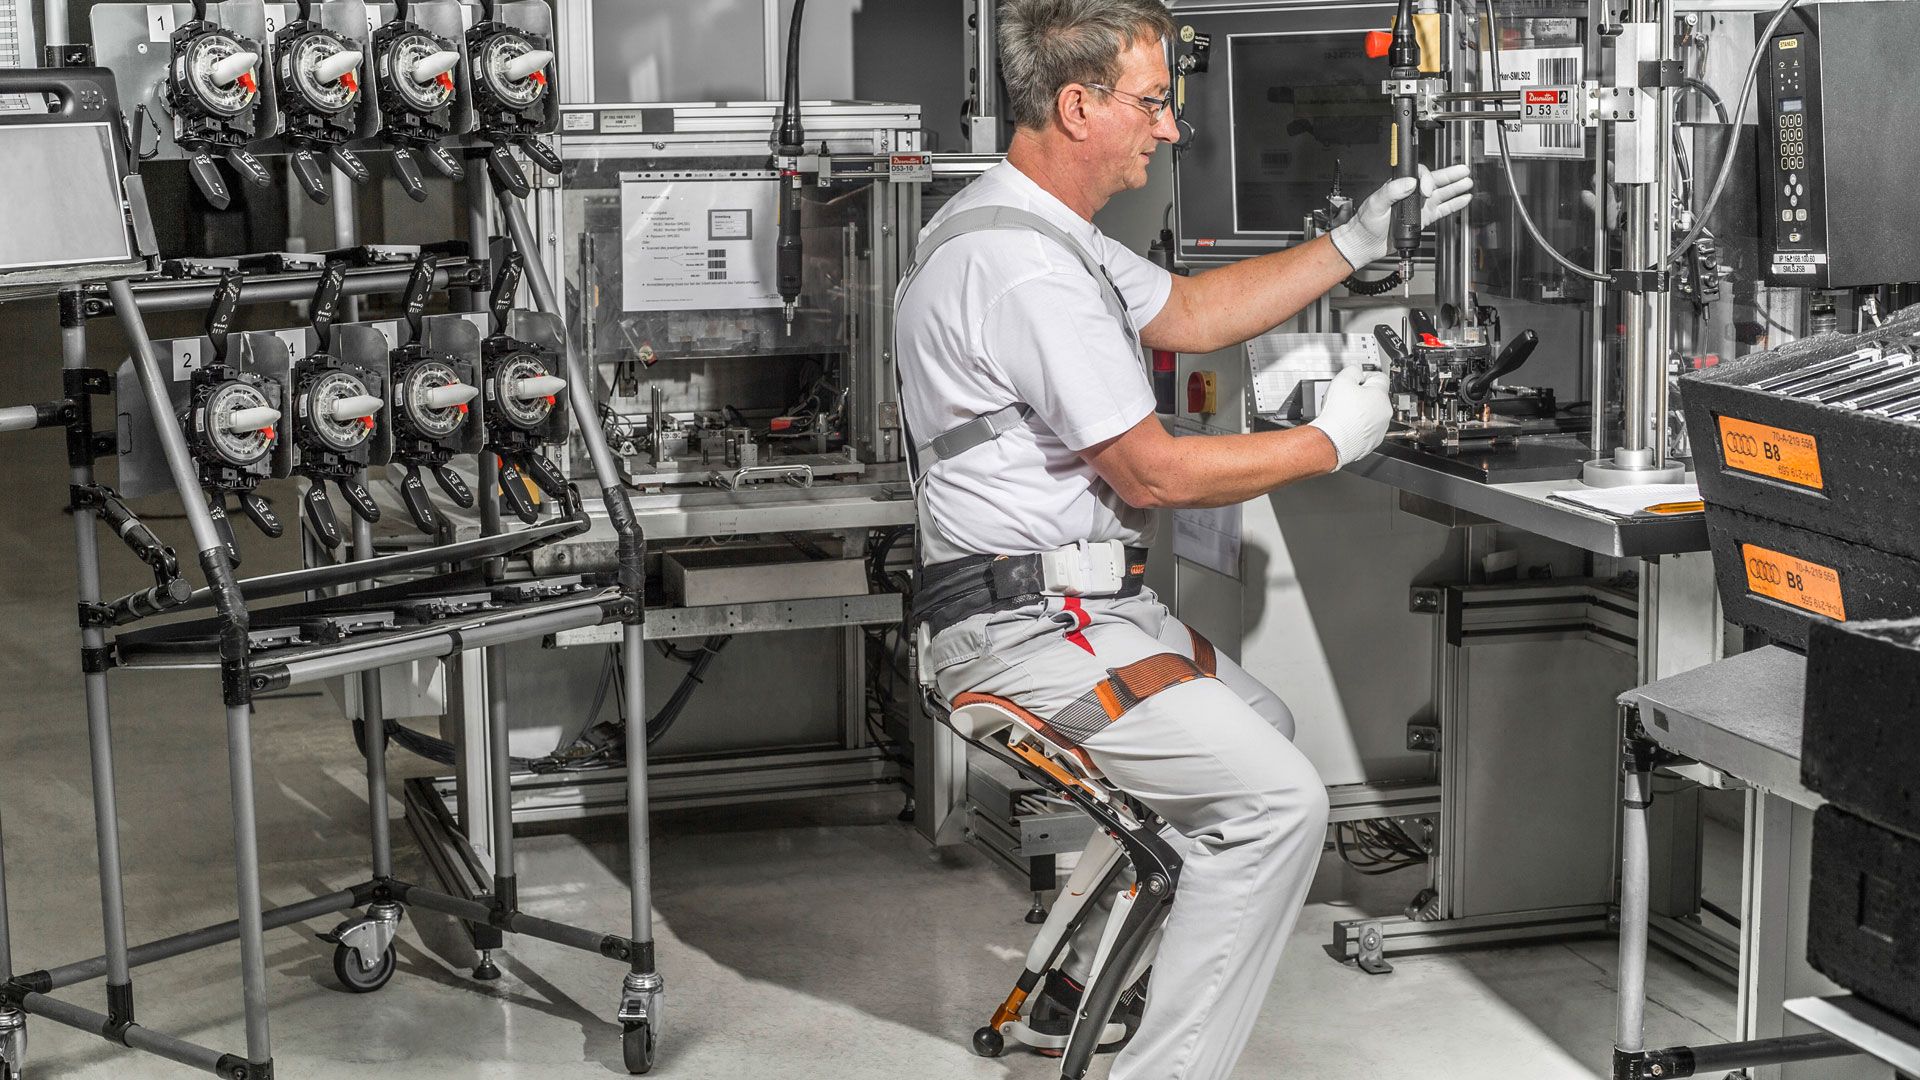 Chairless Chair: Der Chairless Chair erleichtert viele Tätigkeiten in der Montage. Diese Hightech-Konstruktion aus Carbon ermöglicht den Audi-Mitarbeitern das Sitzen ganz ohne Stuhl. Zugleich sorgt sie für eine verbesserte Körperhaltung und reduziert die Beinbelastung.